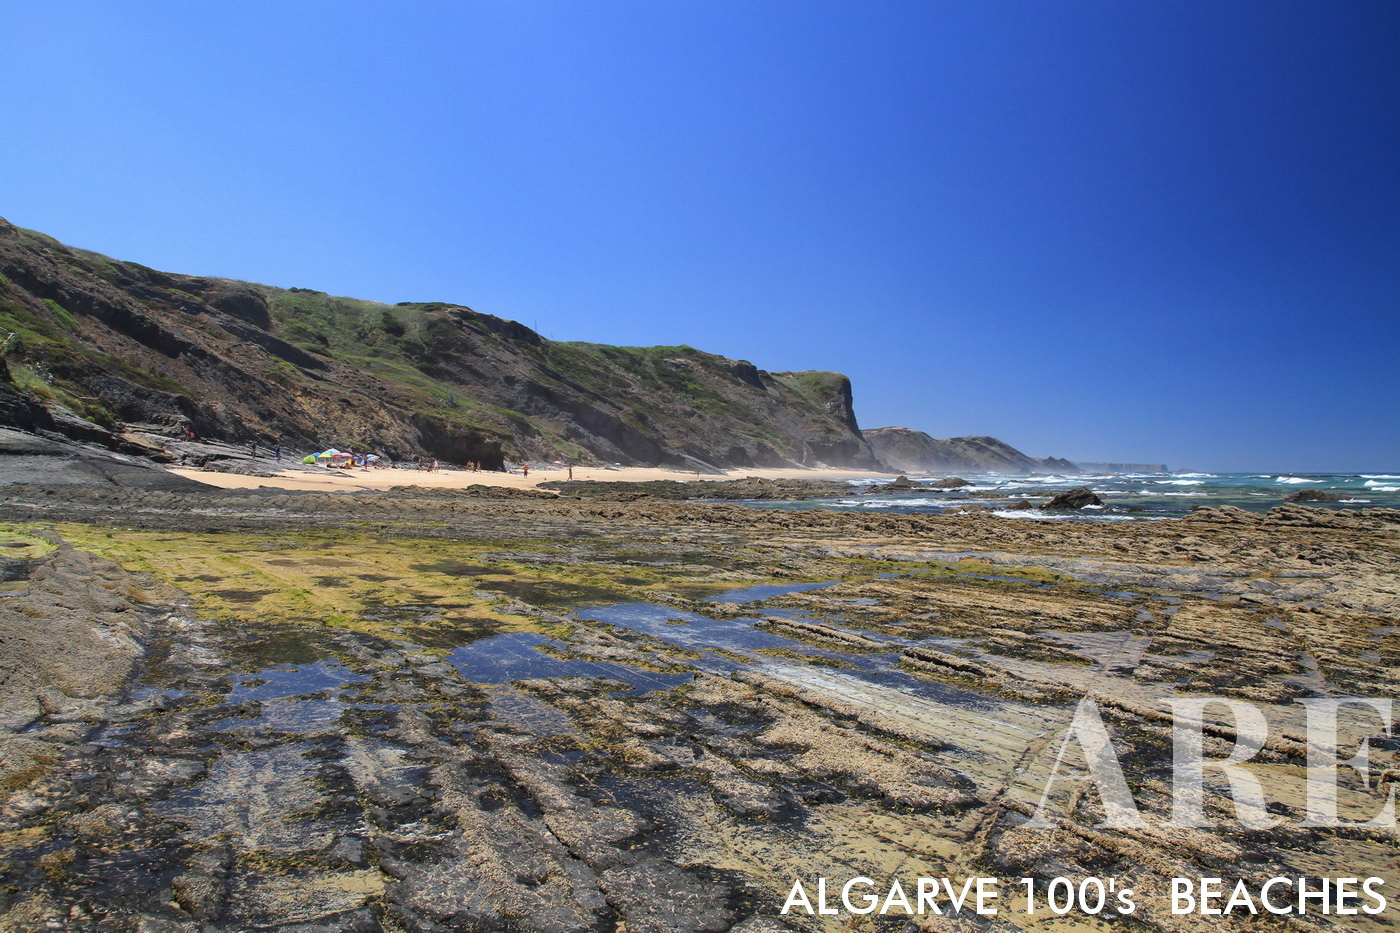 La playa de Carriagem en Rogil, Aljezur, Portugal, presenta una vista única de las formaciones rocosas en la playa durante la marea baja, acentuada aún más por los impresionantes acantilados que rodean este sereno lugar costero.